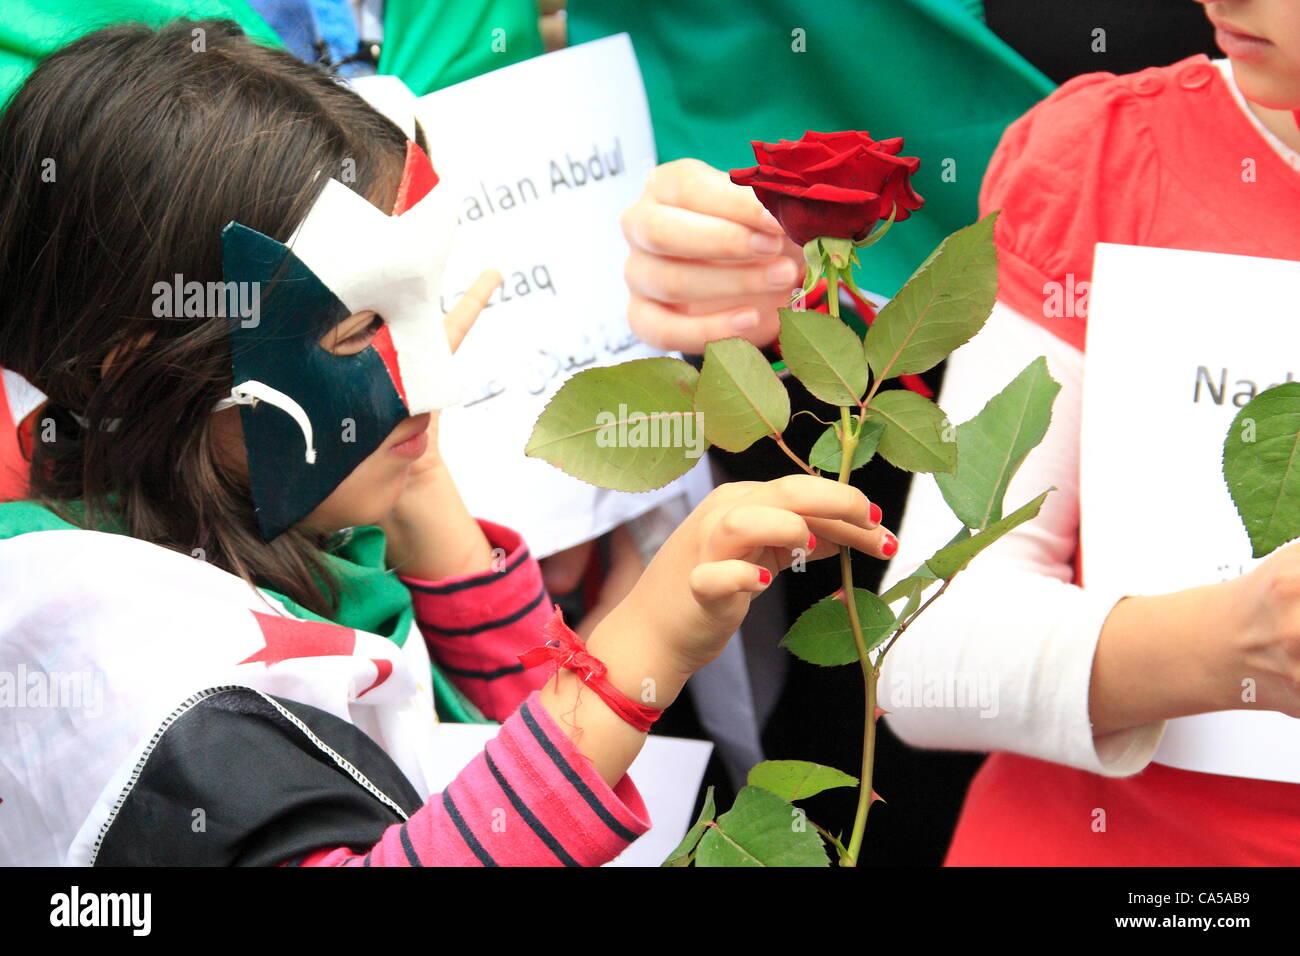 Sonntag, 10. Juni 2012 Journalist Louise Tickle organisiert Protest gegen syrische Botschaft. Kinder erhalten eine rote Rose, um den Tod des Kindes getötet in den letzten syrischen Gräueltaten: Credit: HOT SHOTS / Alamy Live News Stockfoto